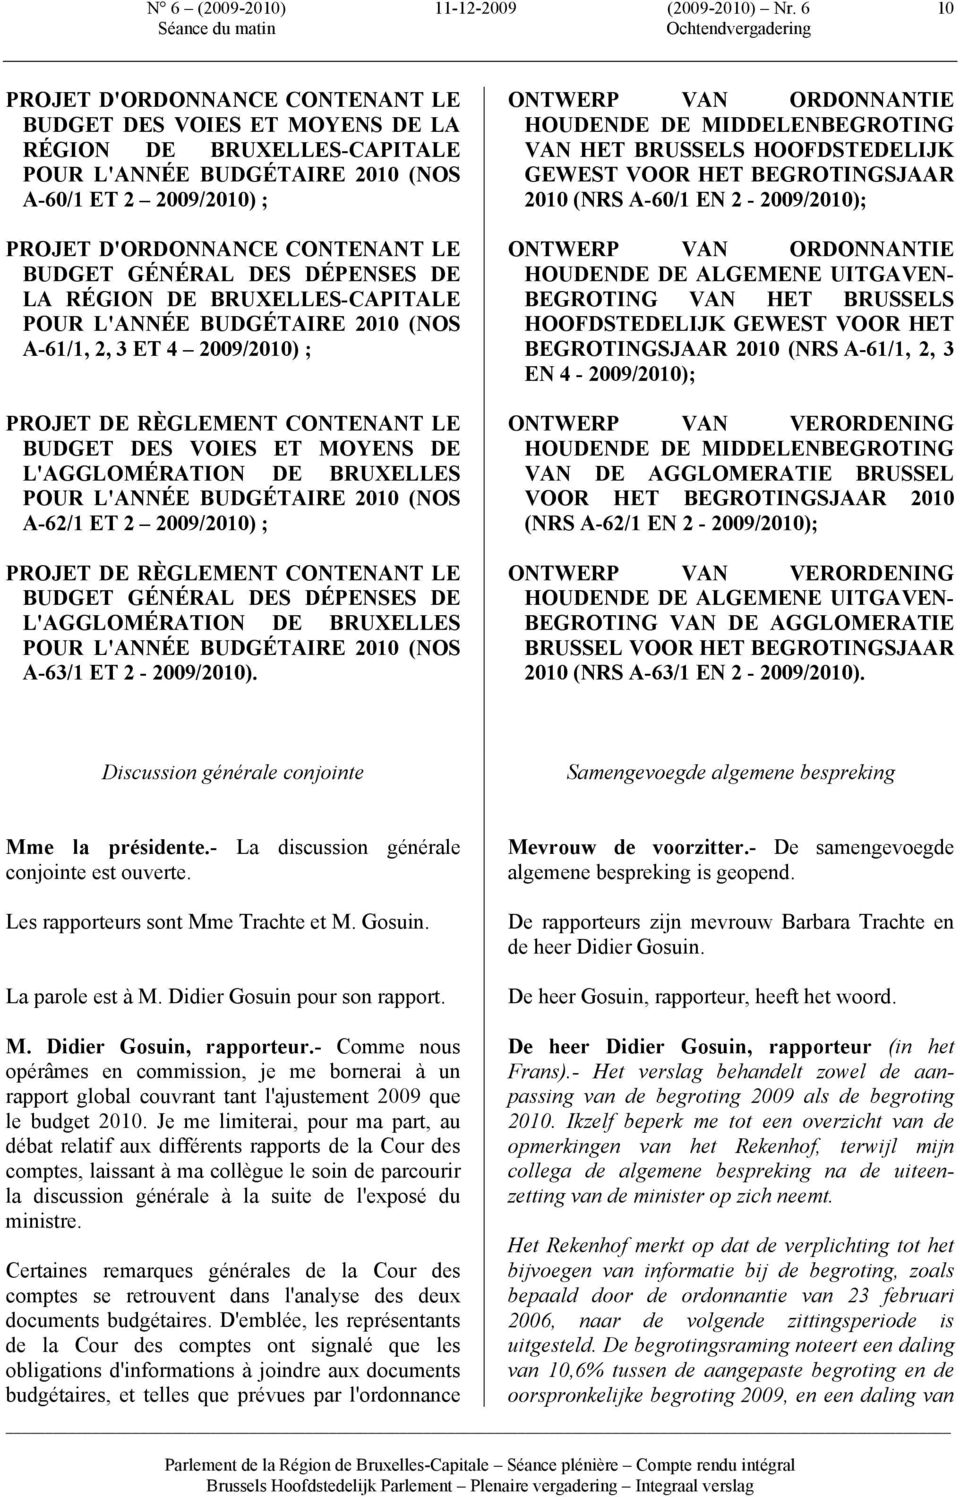 GÉNÉRAL DES DÉPENSES DE LA RÉGION DE BRUXELLES-CAPITALE POUR L'ANNÉE BUDGÉTAIRE 2010 (NOS A-61/1, 2, 3 ET 4 2009/2010) ; PROJET DE RÈGLEMENT CONTENANT LE BUDGET DES VOIES ET MOYENS DE L'AGGLOMÉRATION